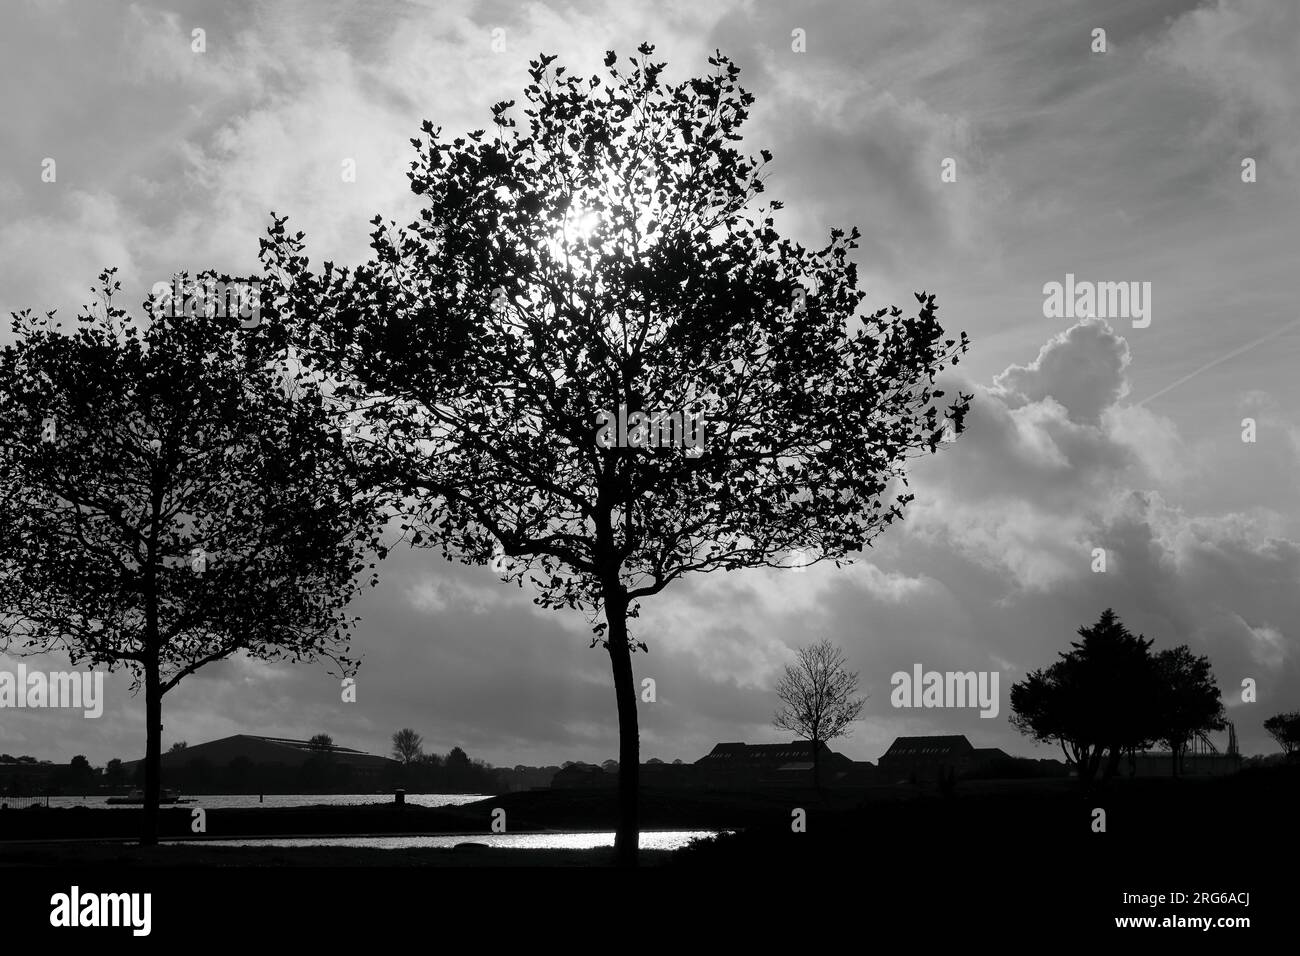 Immagine in bianco e nero di un albero adagiato su un cielo scuro e nuvoloso con una luminosa striscia di sole tra i rami dell'albero e dietro le nuvole. Foto Stock